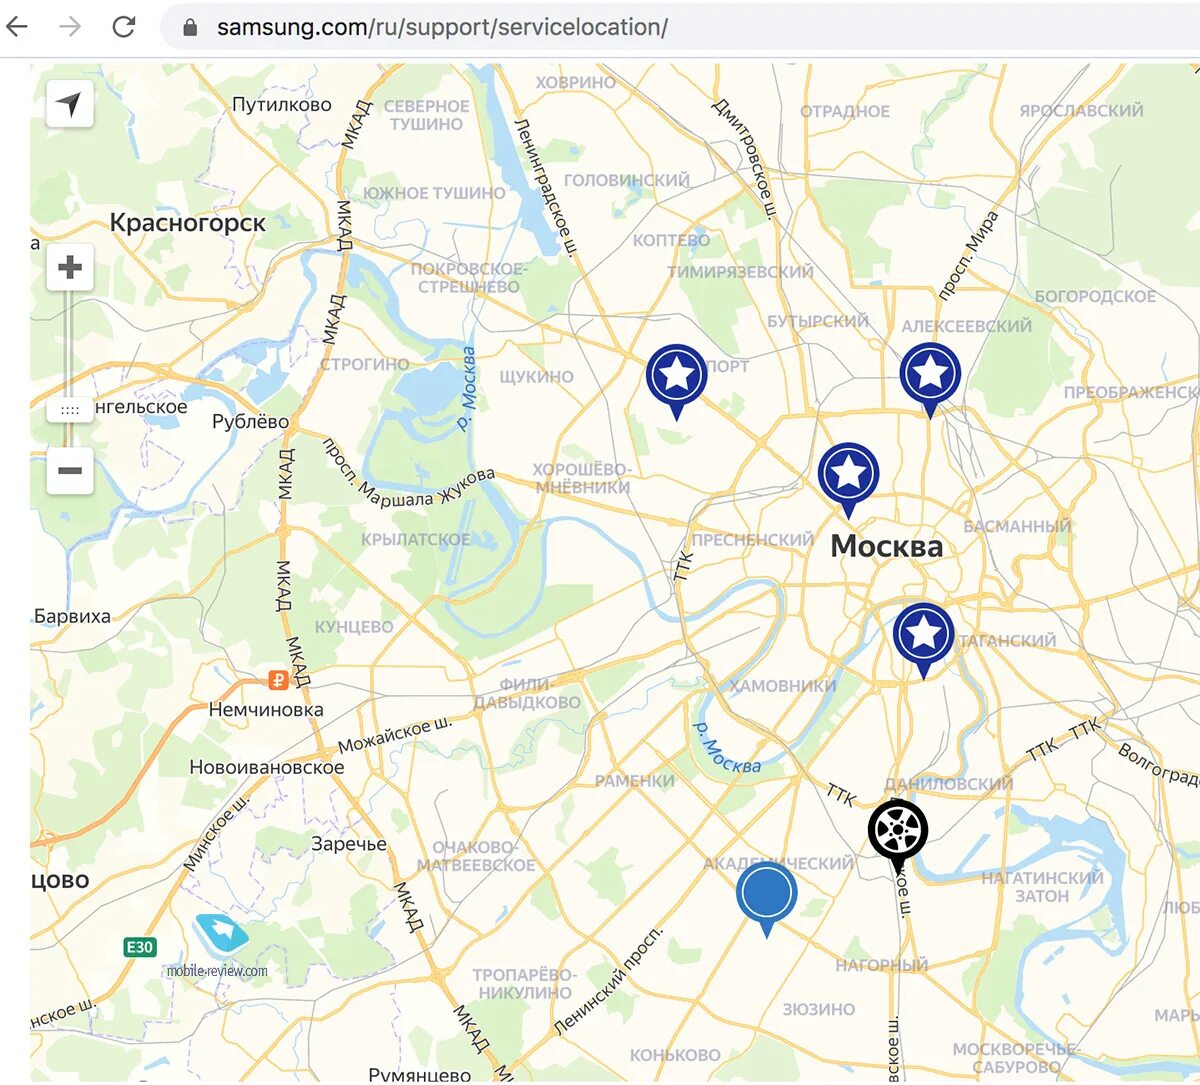 Телефоны московских организаций. Карта Москвы с магазинами. Сервисный центр Samsung в Москве адреса. Карта сервисных центров. Карта магазина.